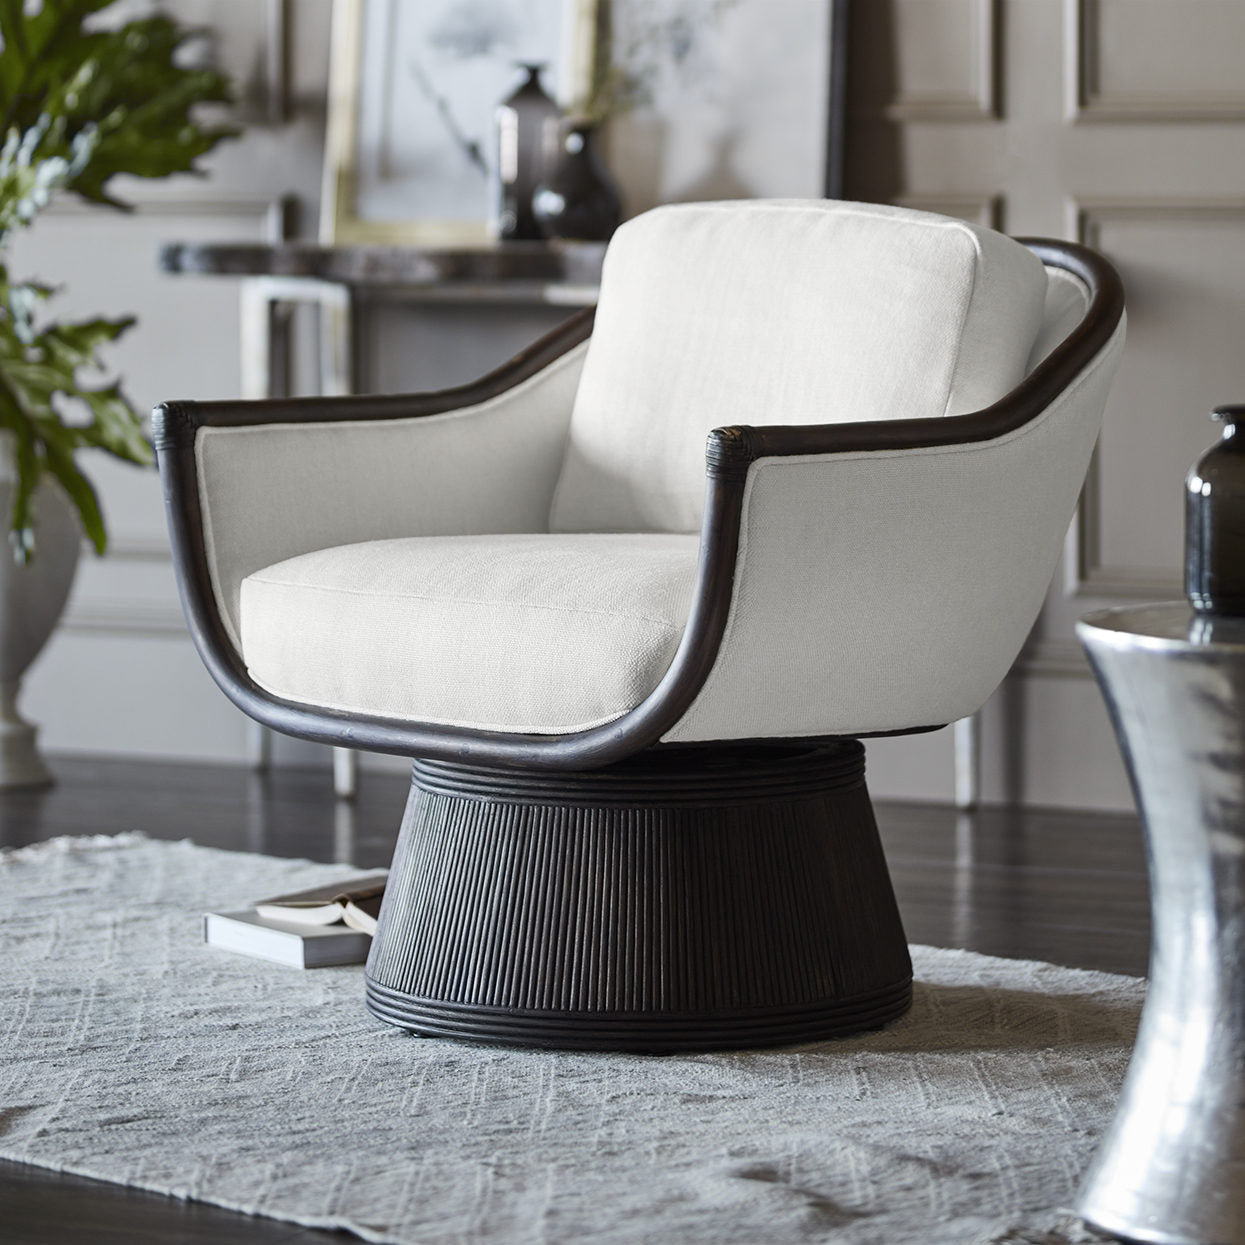 palecek baldwin swivel lounge chair styled